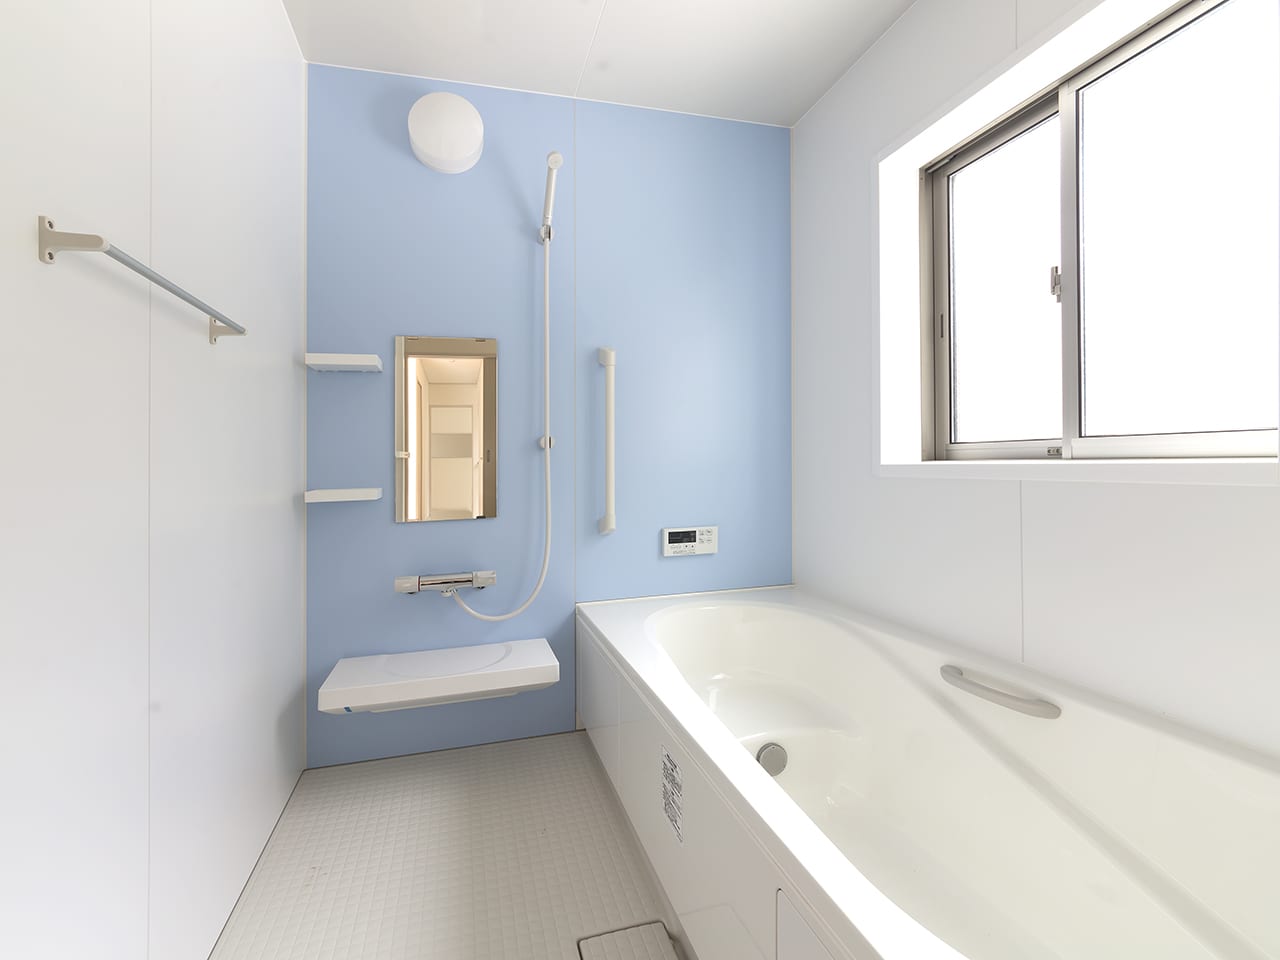 浴槽・浴室水回り専用特殊塗装・リフォーム参考価格のイメージ画像、綺麗な浴室の写真